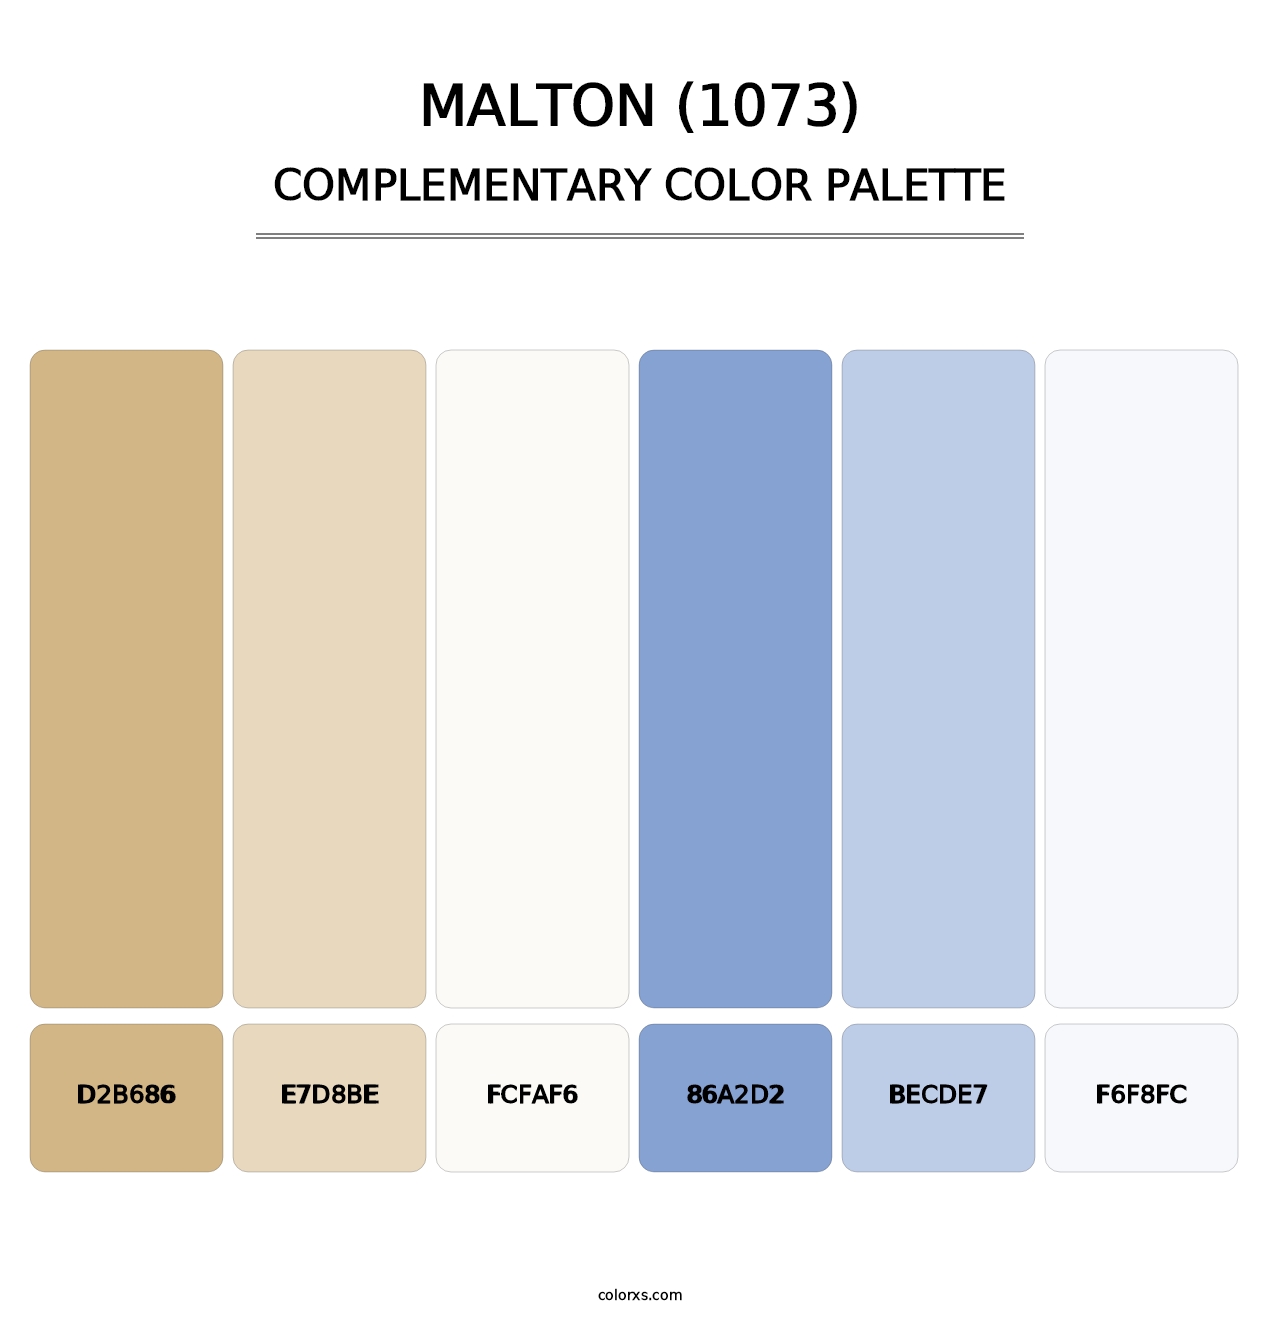 Malton (1073) - Complementary Color Palette